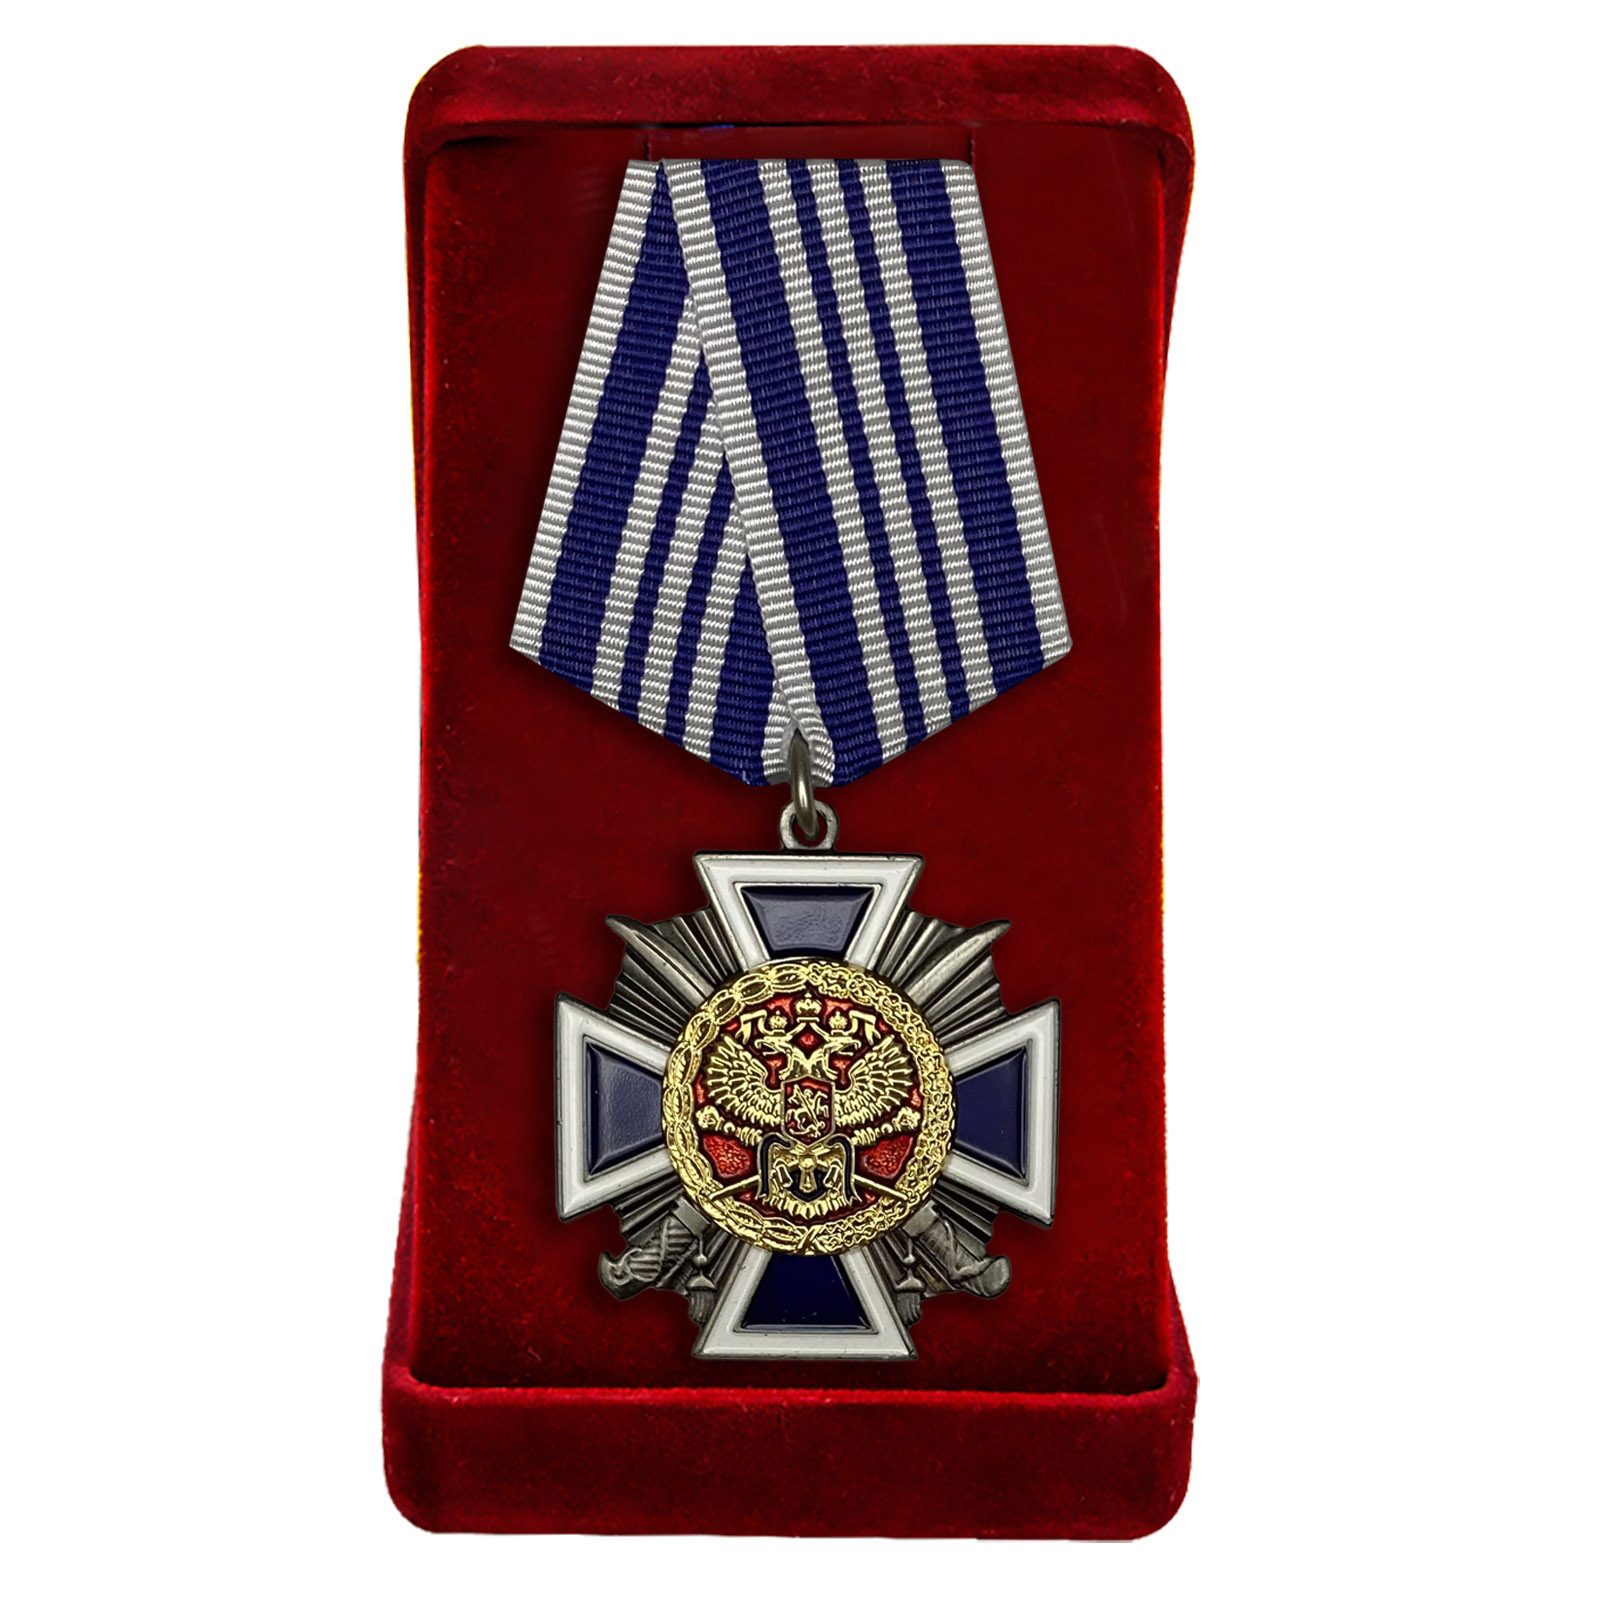 Наградной крест "За заслуги перед казачеством" 3-ей степени 